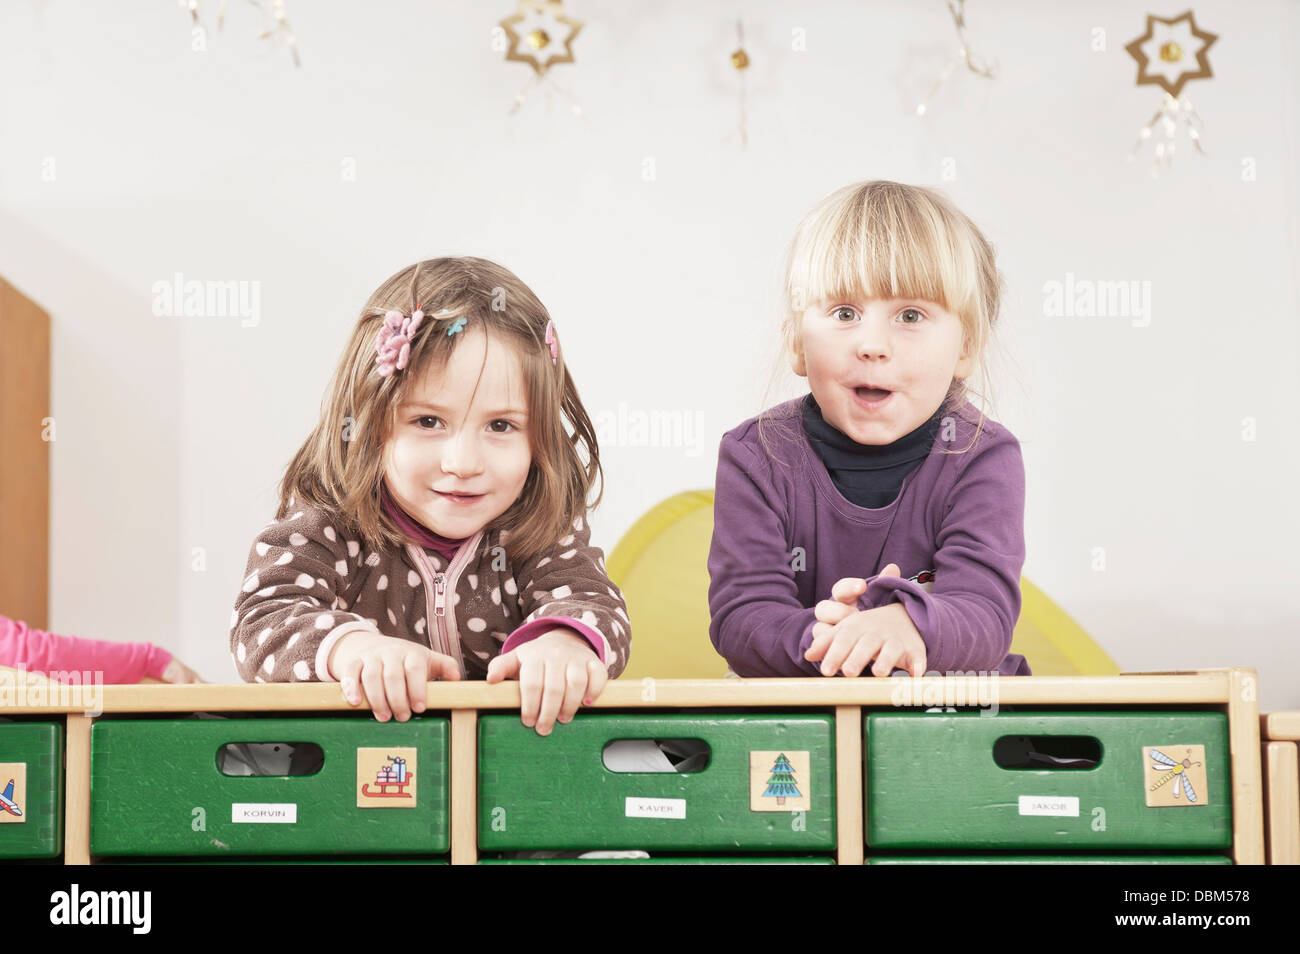 Deux enfants en école maternelle, Kottgeisering, Bavaria, Germany, Europe Banque D'Images